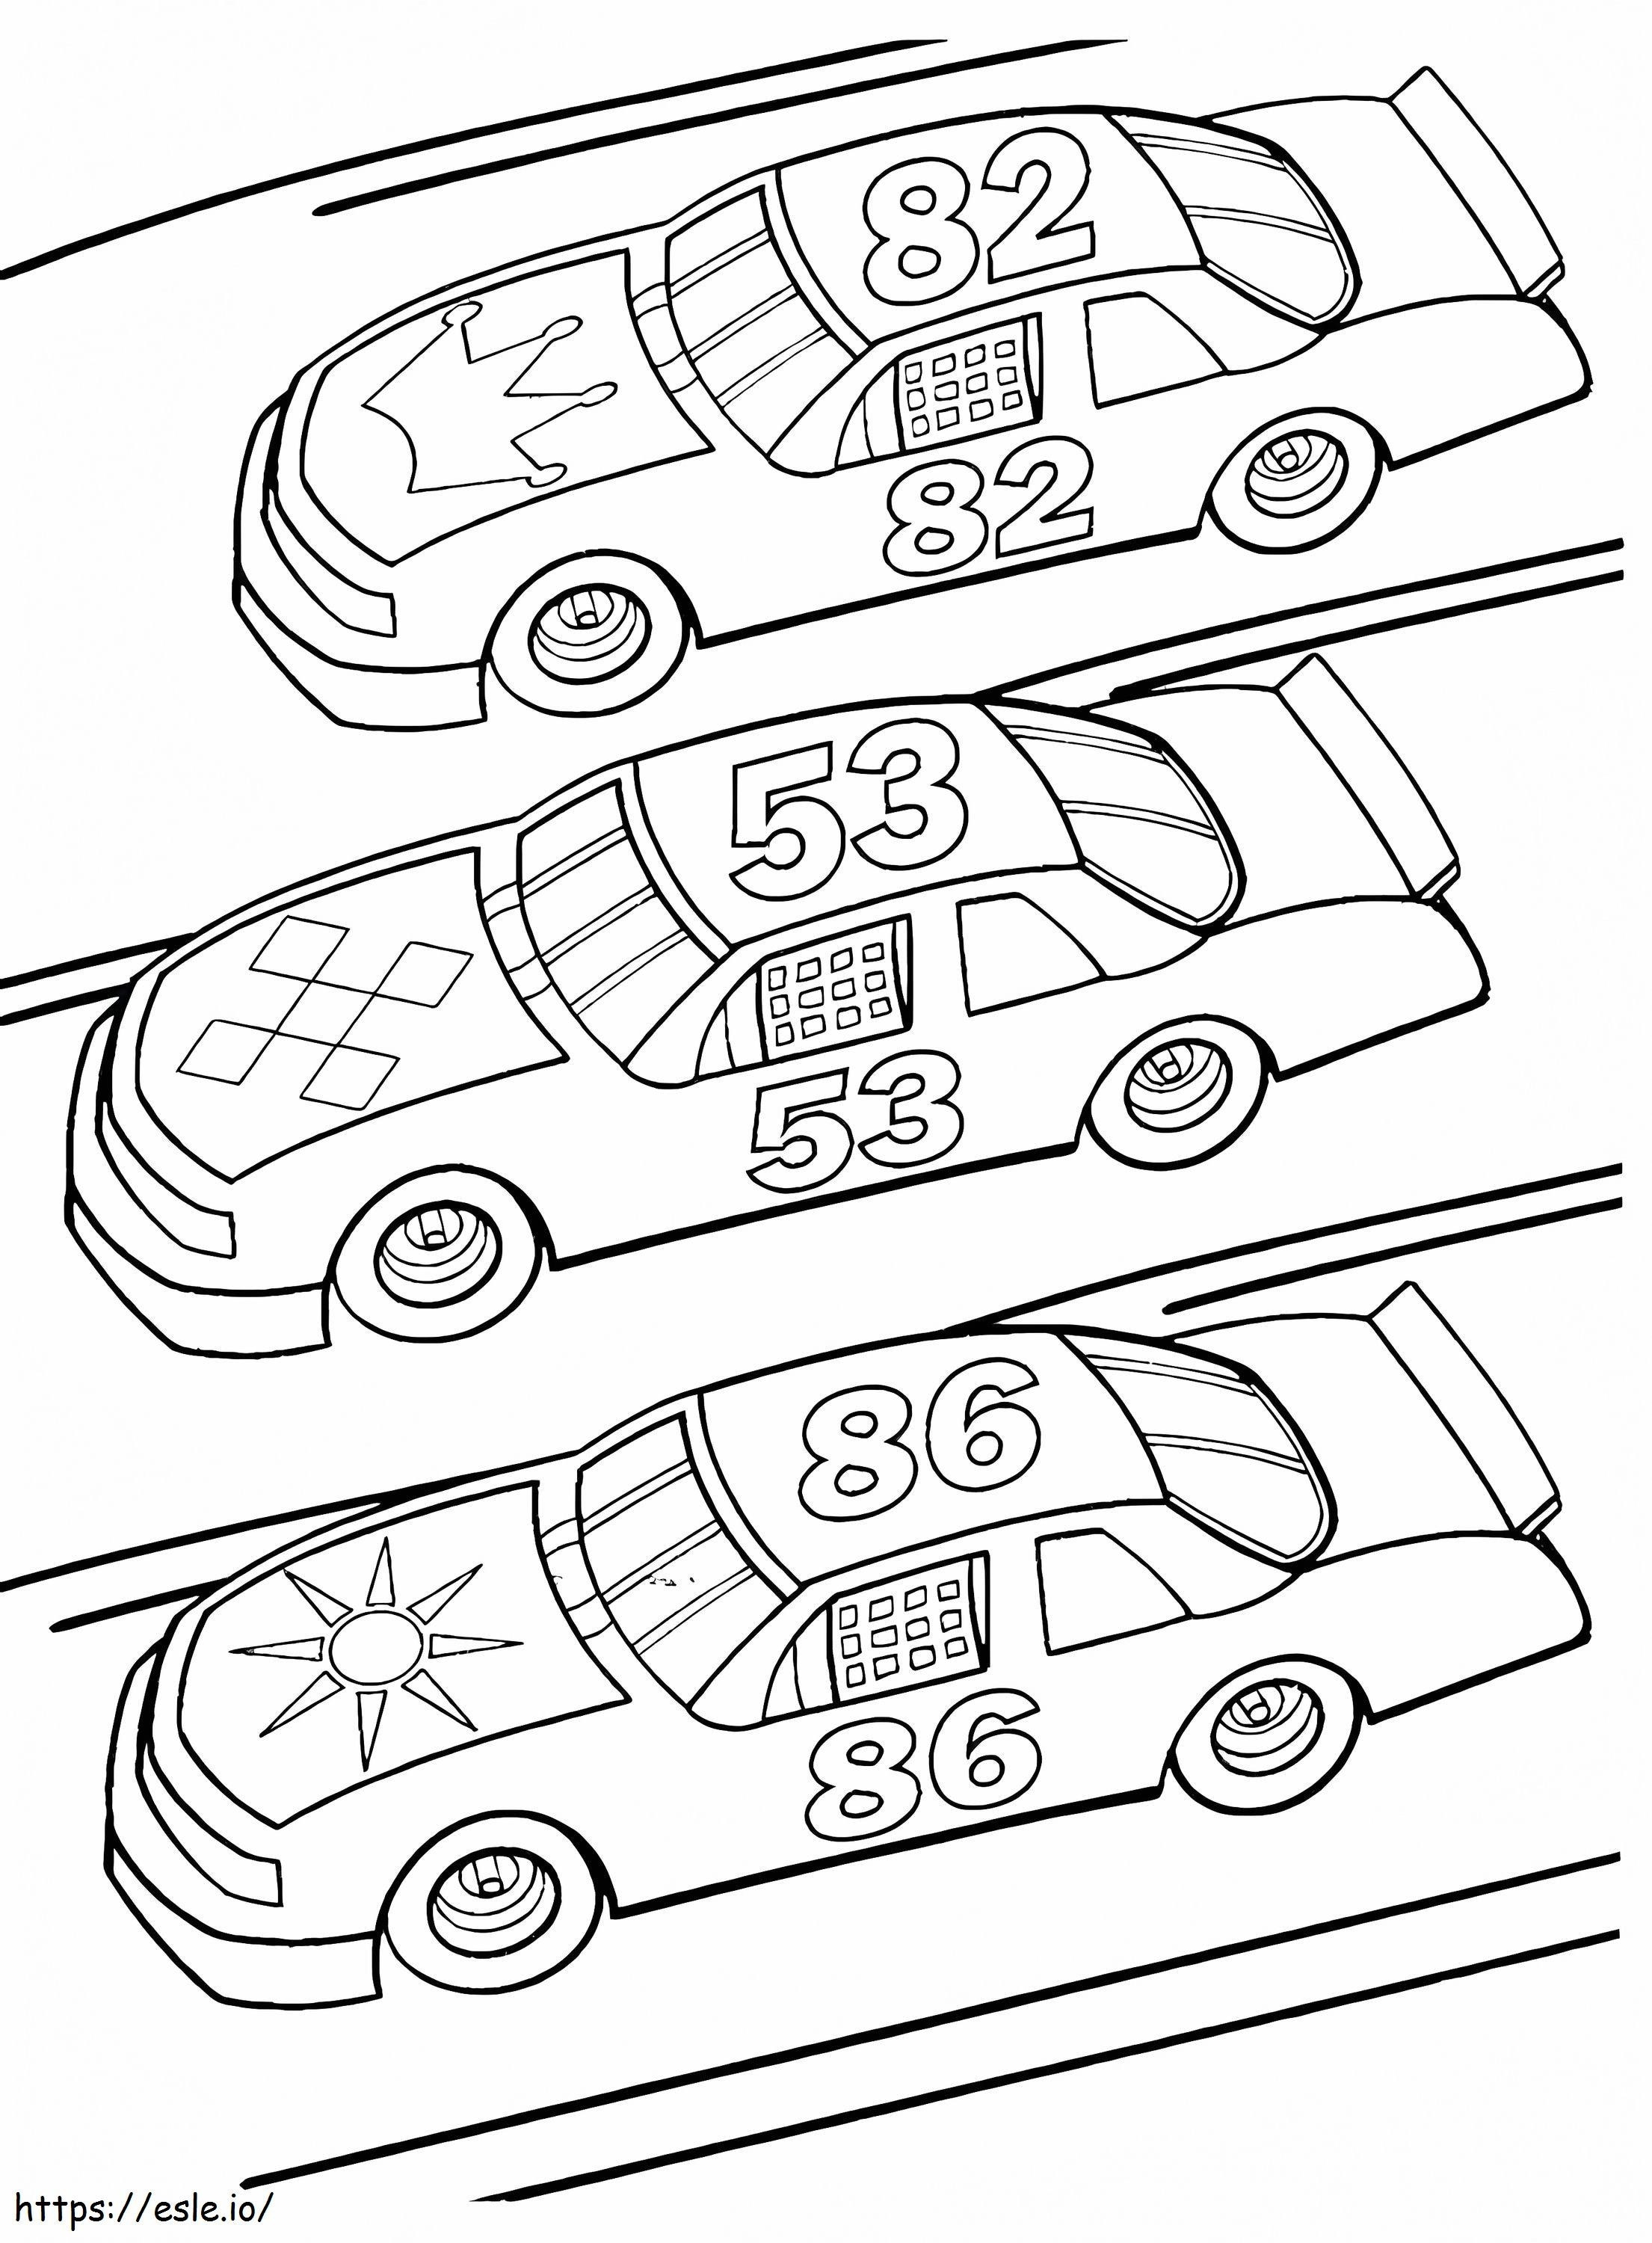 1575249314 Araba Boyama Sayfaları Küçük Çocuklar İçin Arabalar Yarış Arabası Boyama Sayfası Bebekler İçin Yarış Arabası Polis Arabaları Yetişkinler İçin Araba Boyama Sayfaları boyama